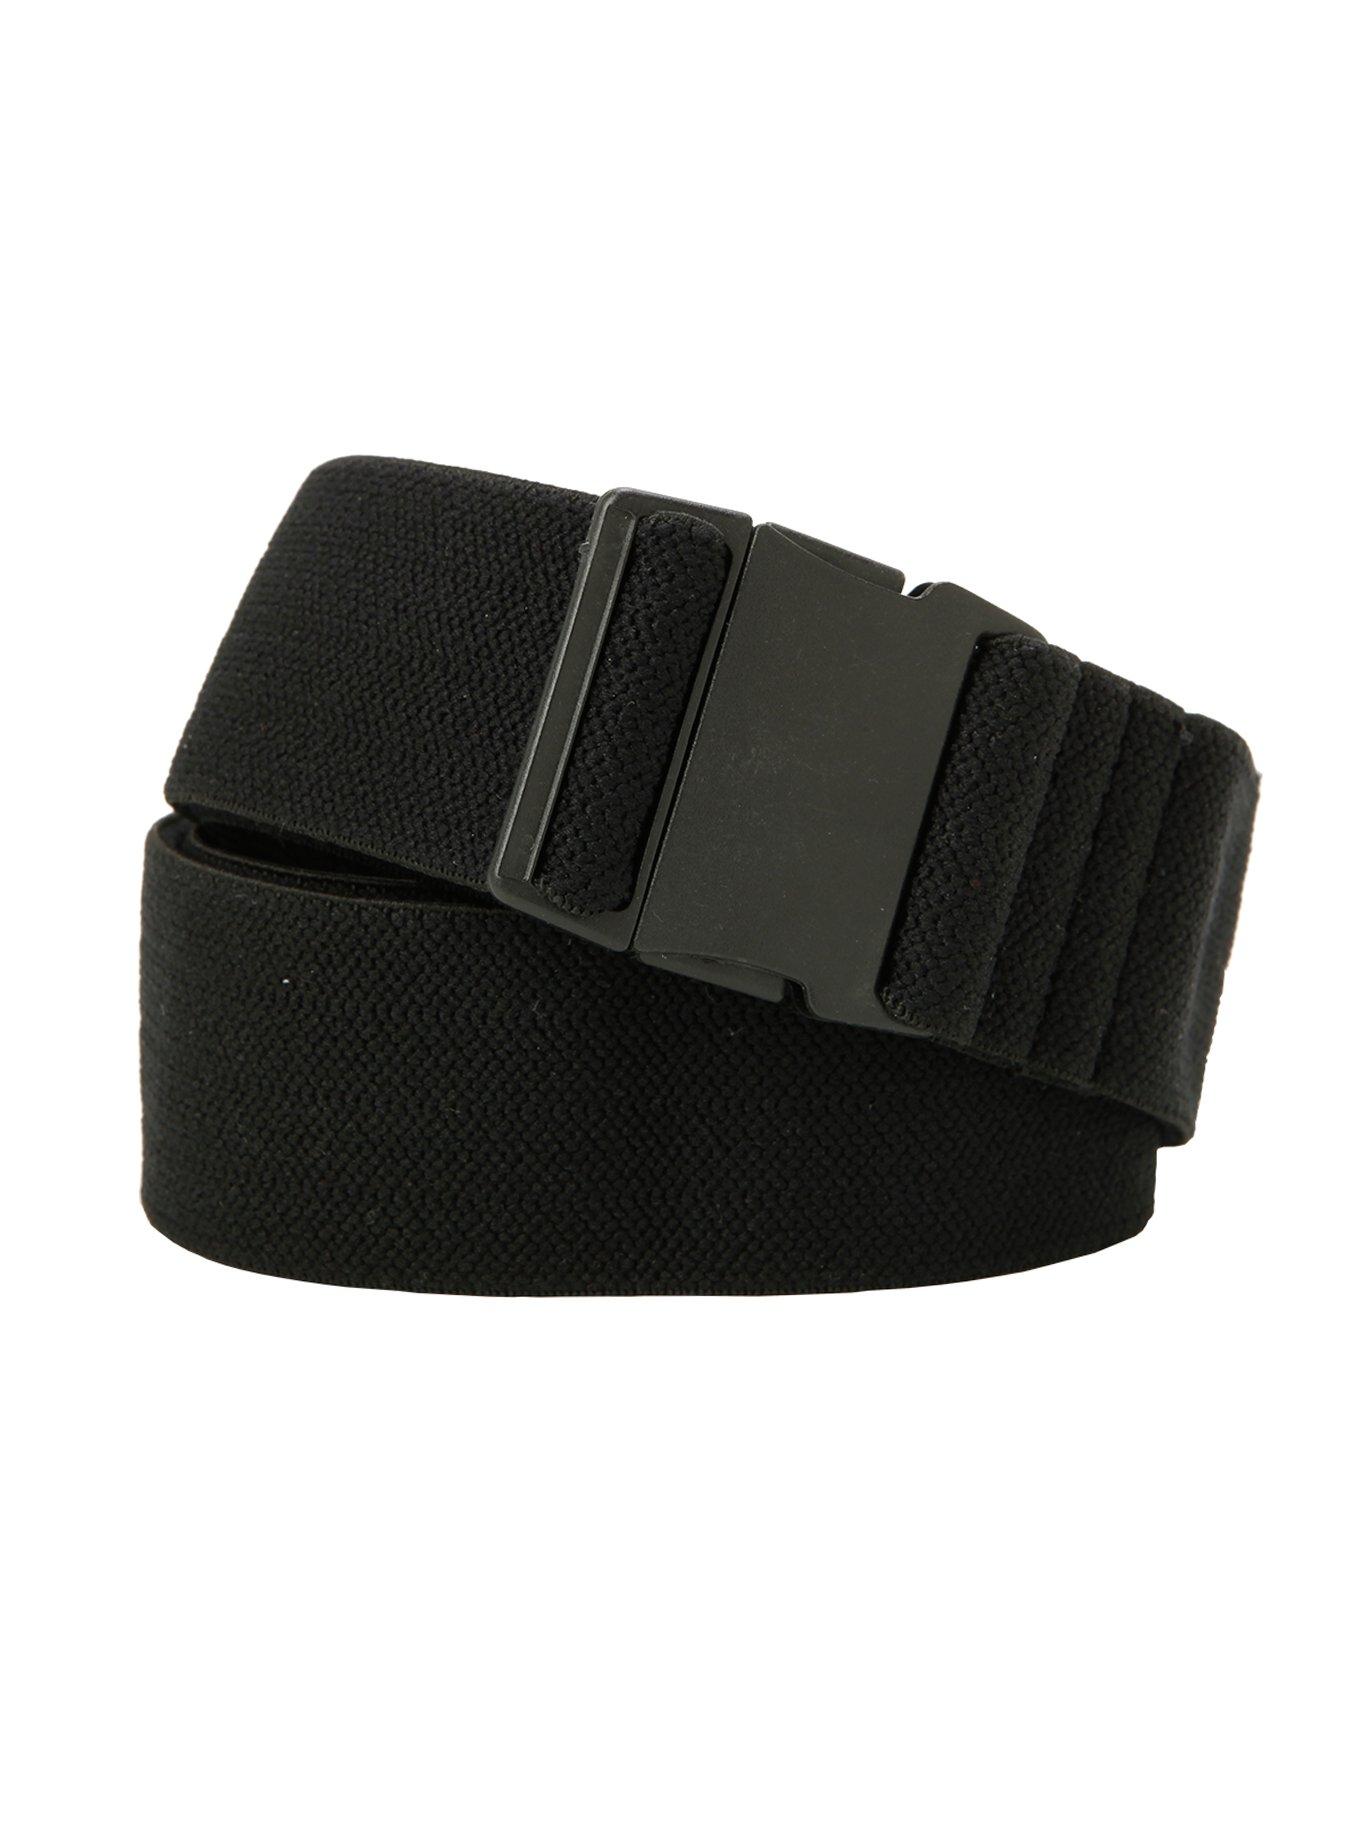 Black Elastic Web Belt, , hi-res